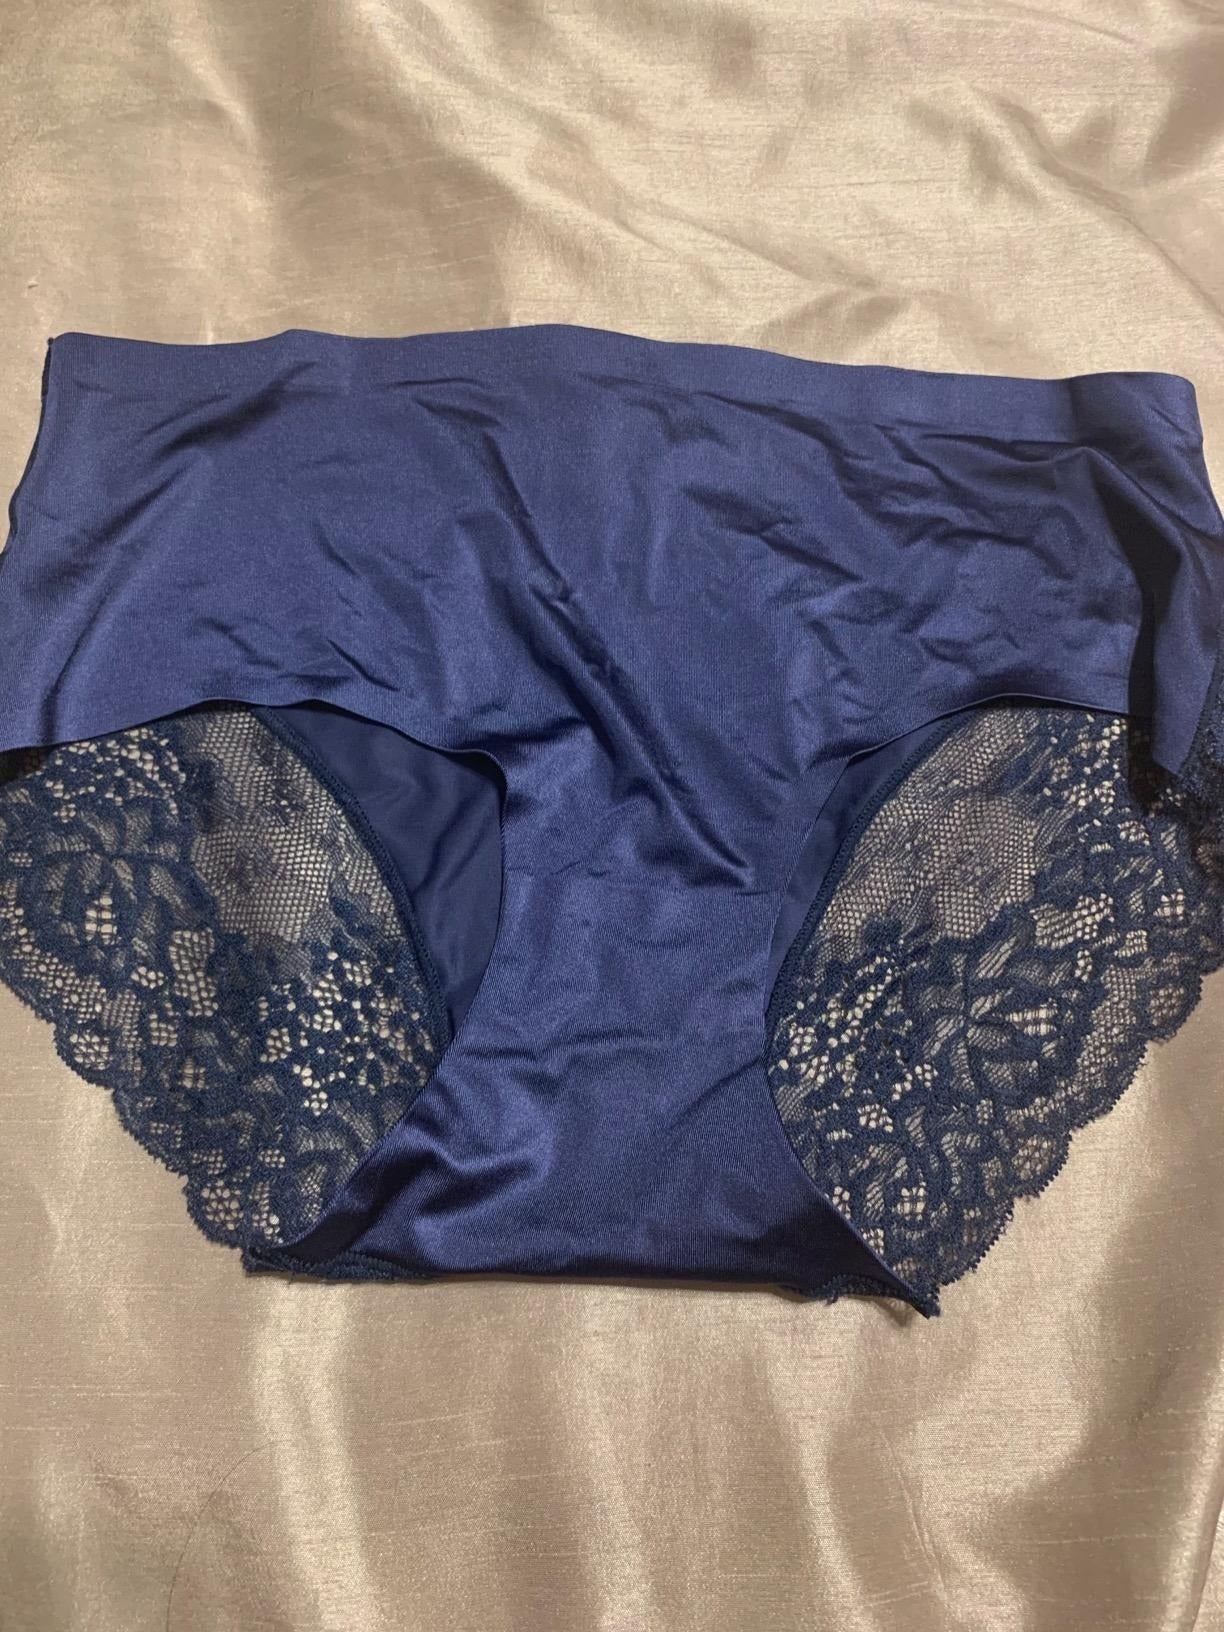  Blue Lace Underwear Women